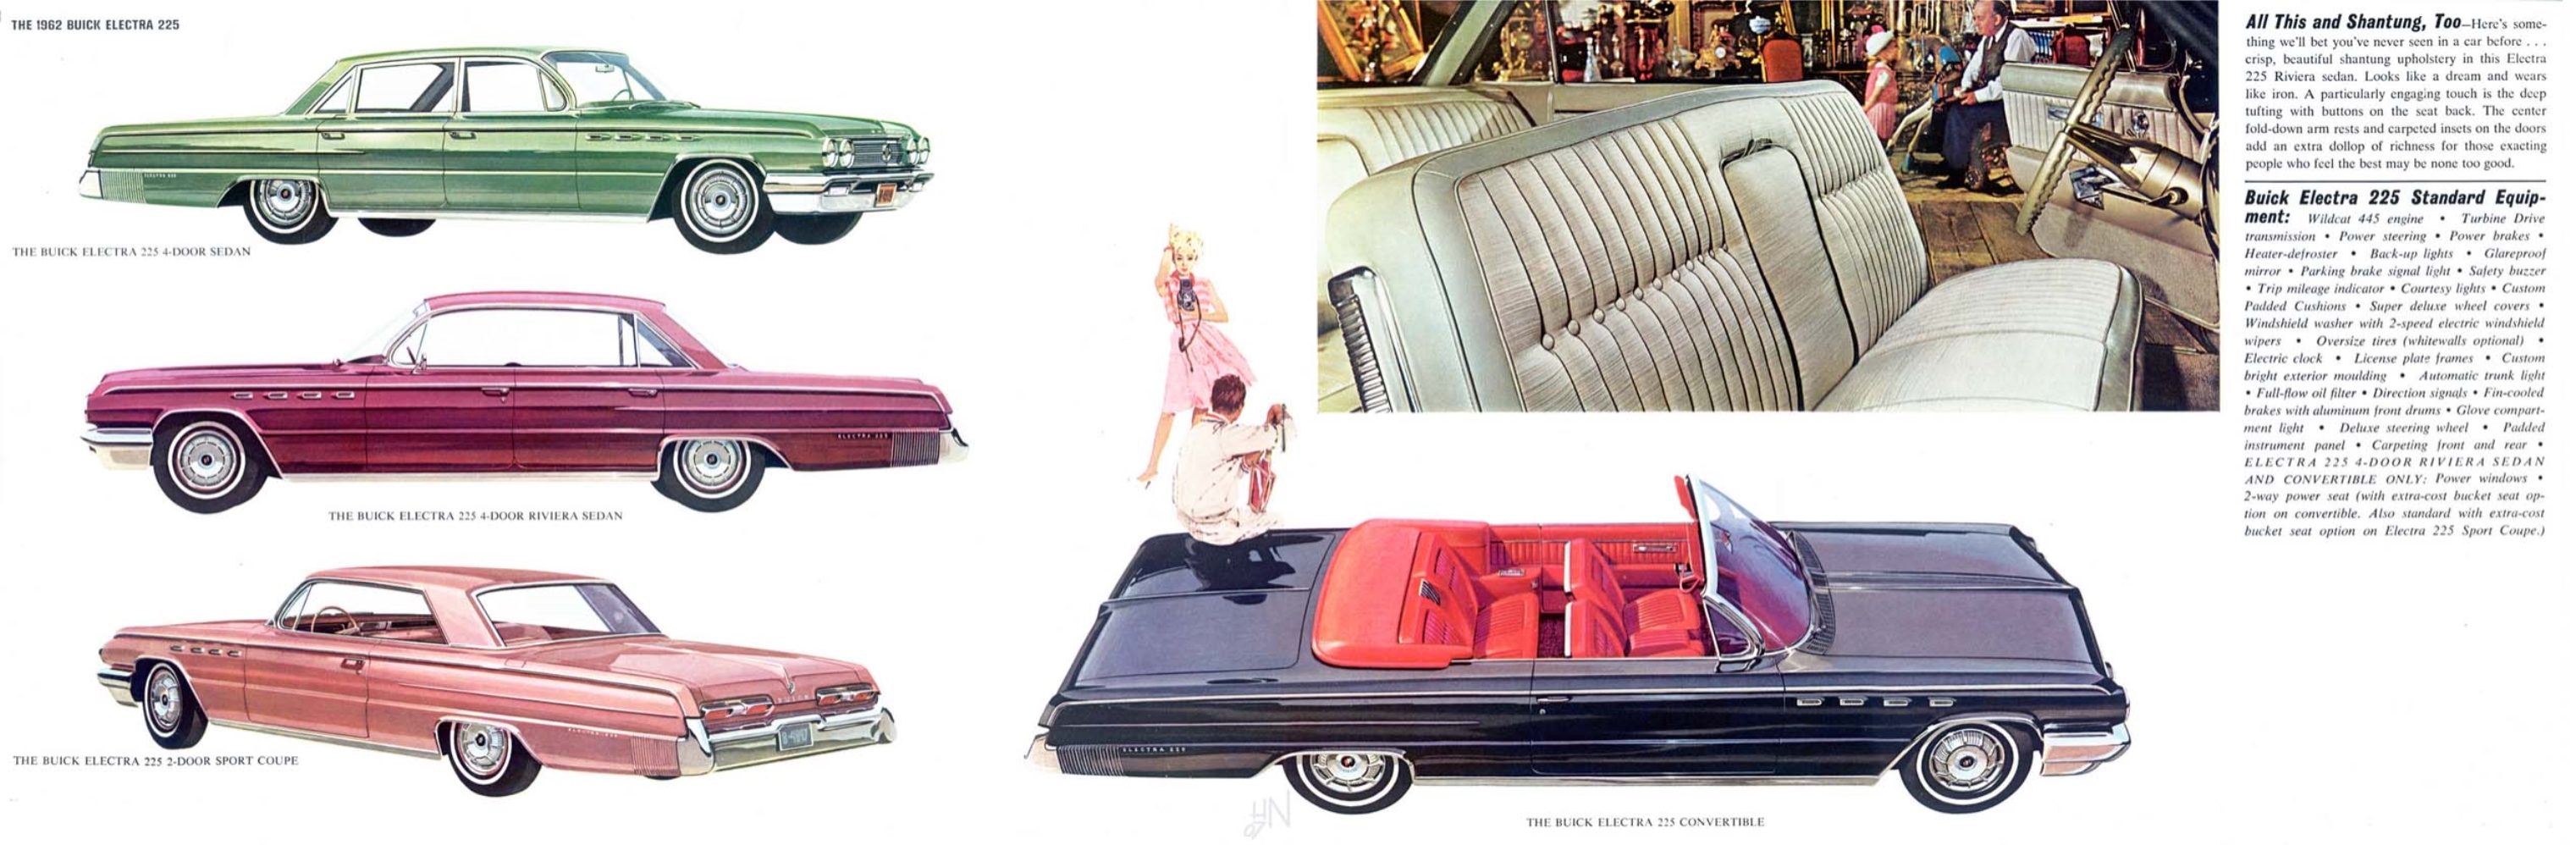 1962 Buick Full Line Prestige-22-23